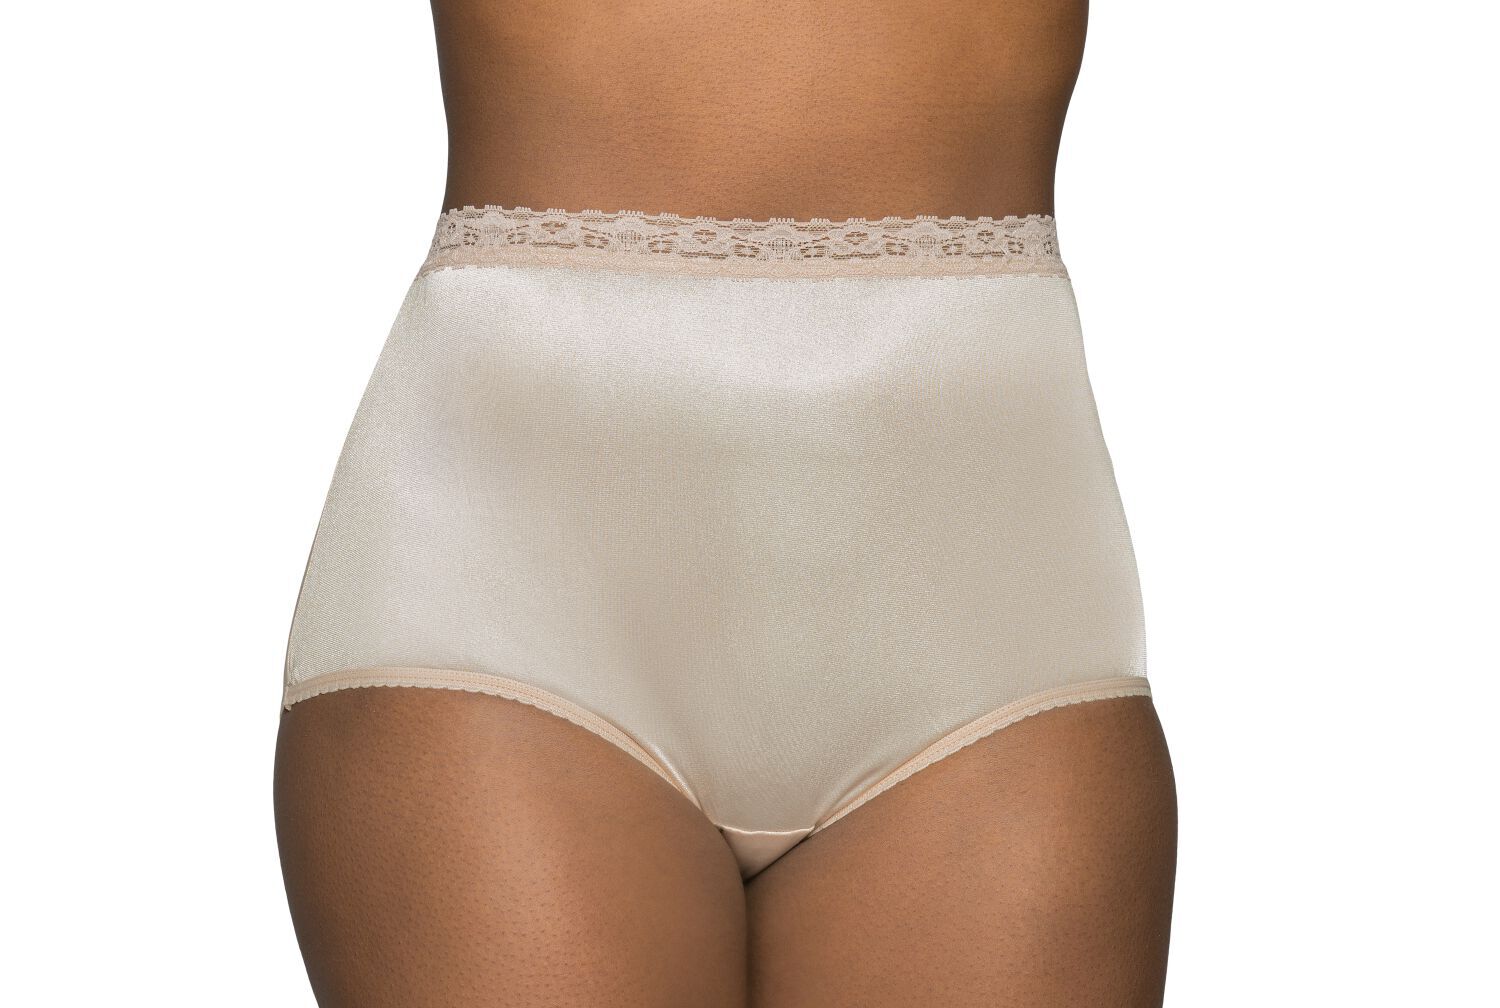 11 Best Nylon Panties For Women for 2023